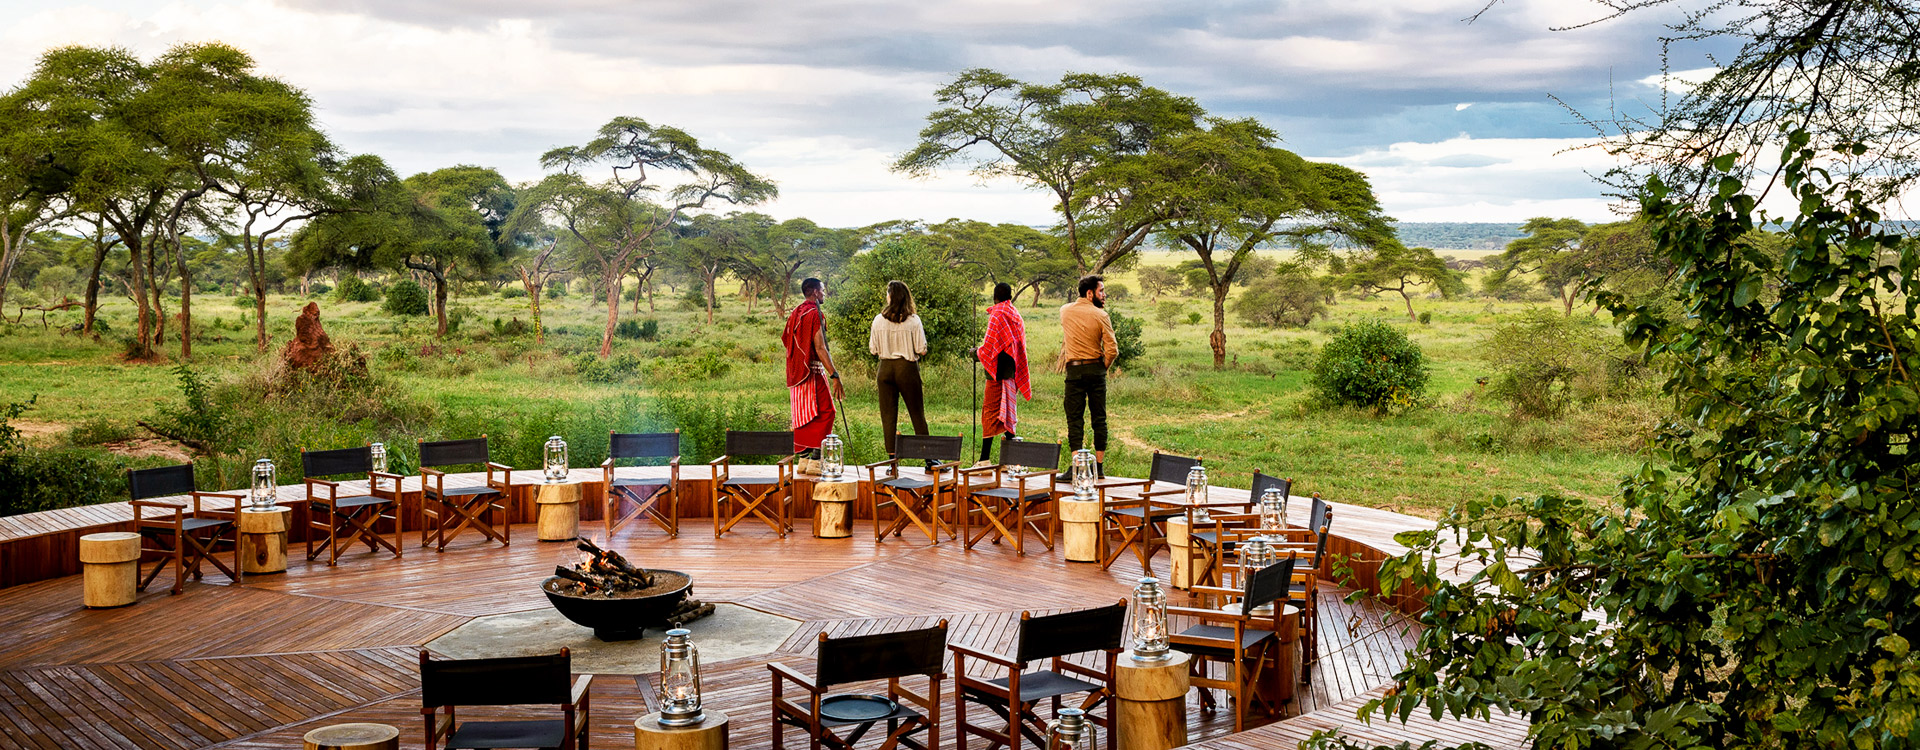 5 Days Tanzania Luxury Safari